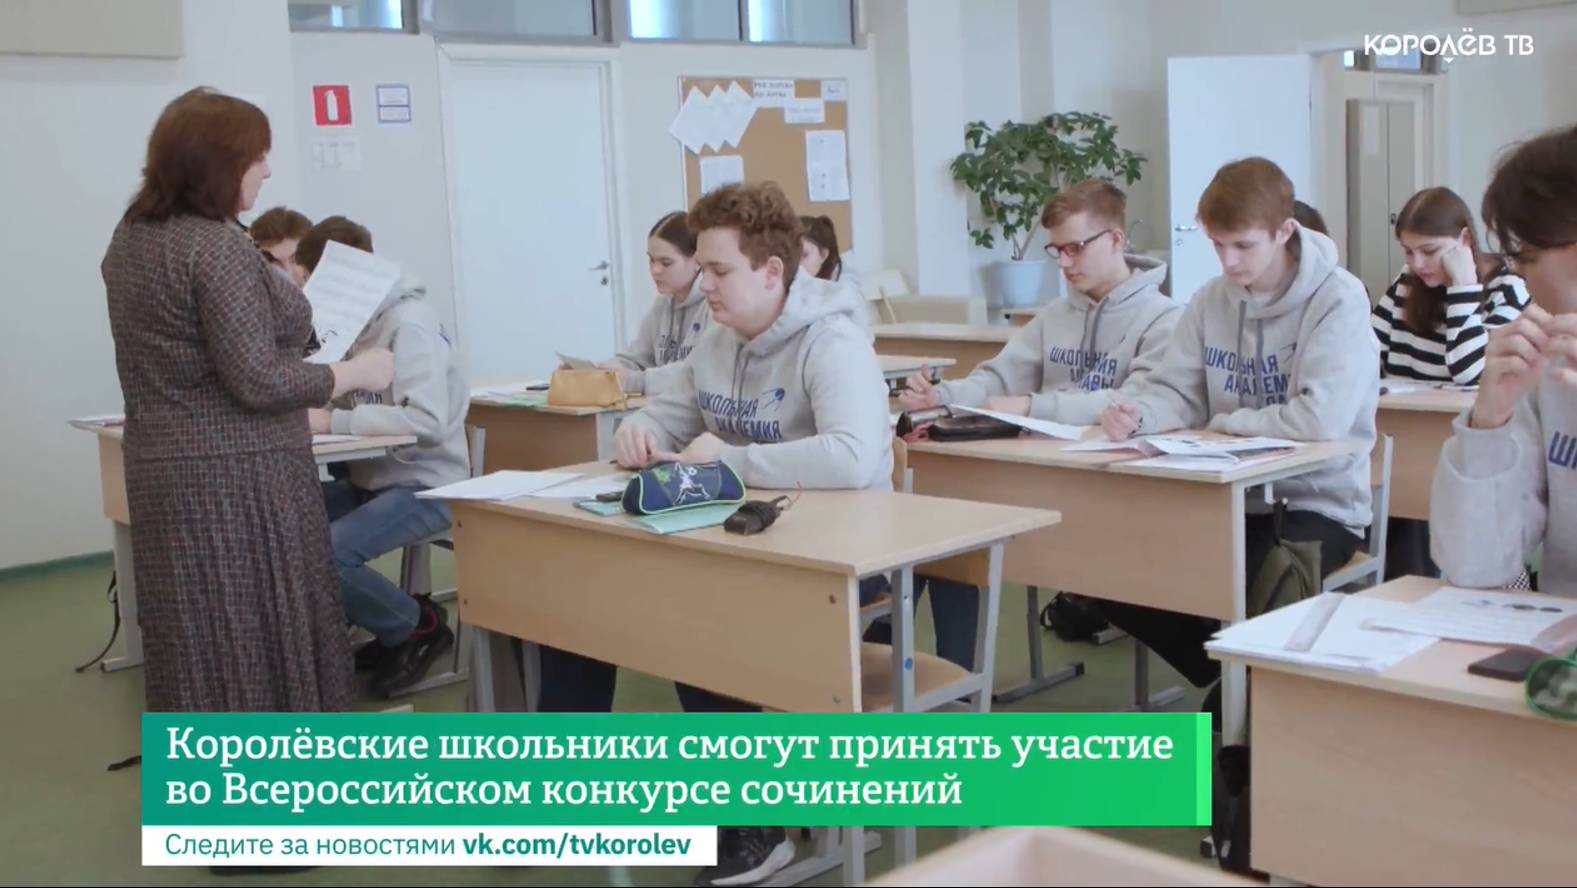 Королёвские школьники смогут принять участие во Всероссийском конкурсе сочинений